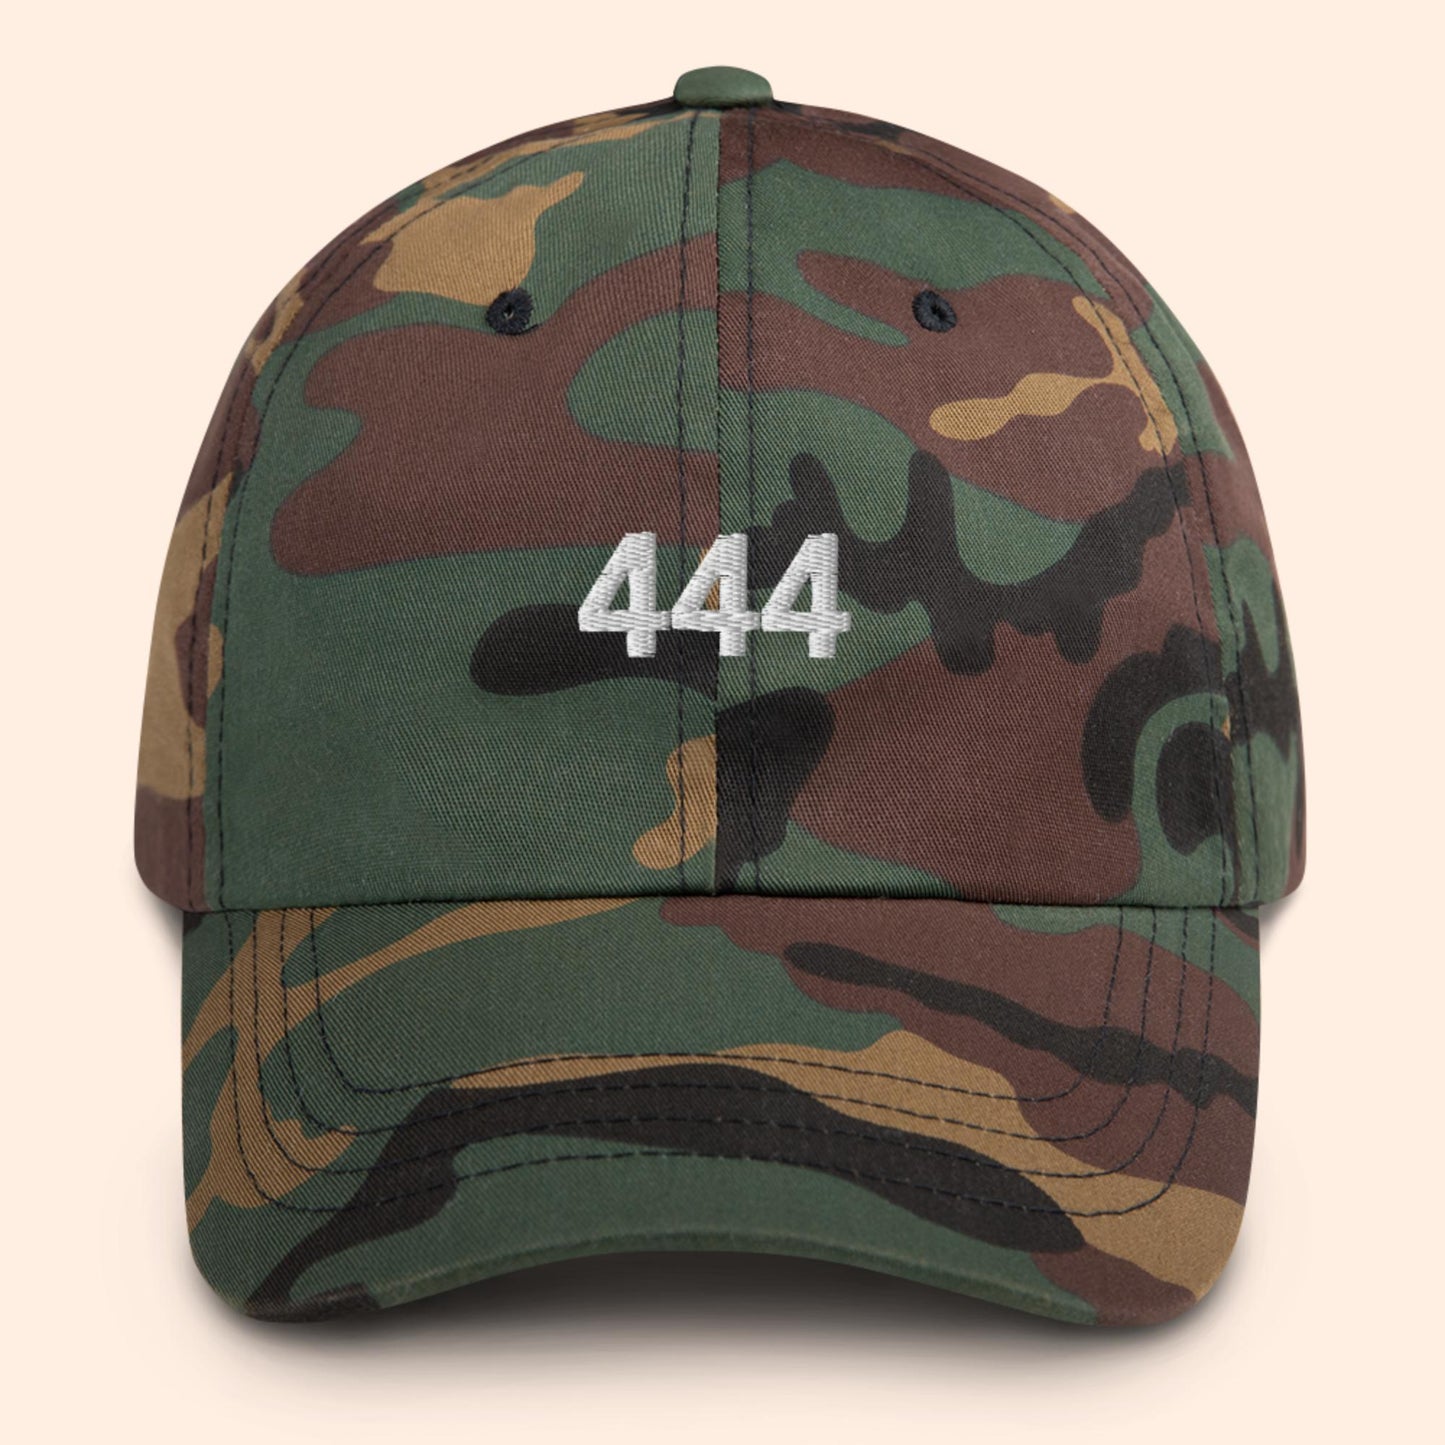 444 Angel Number Hat